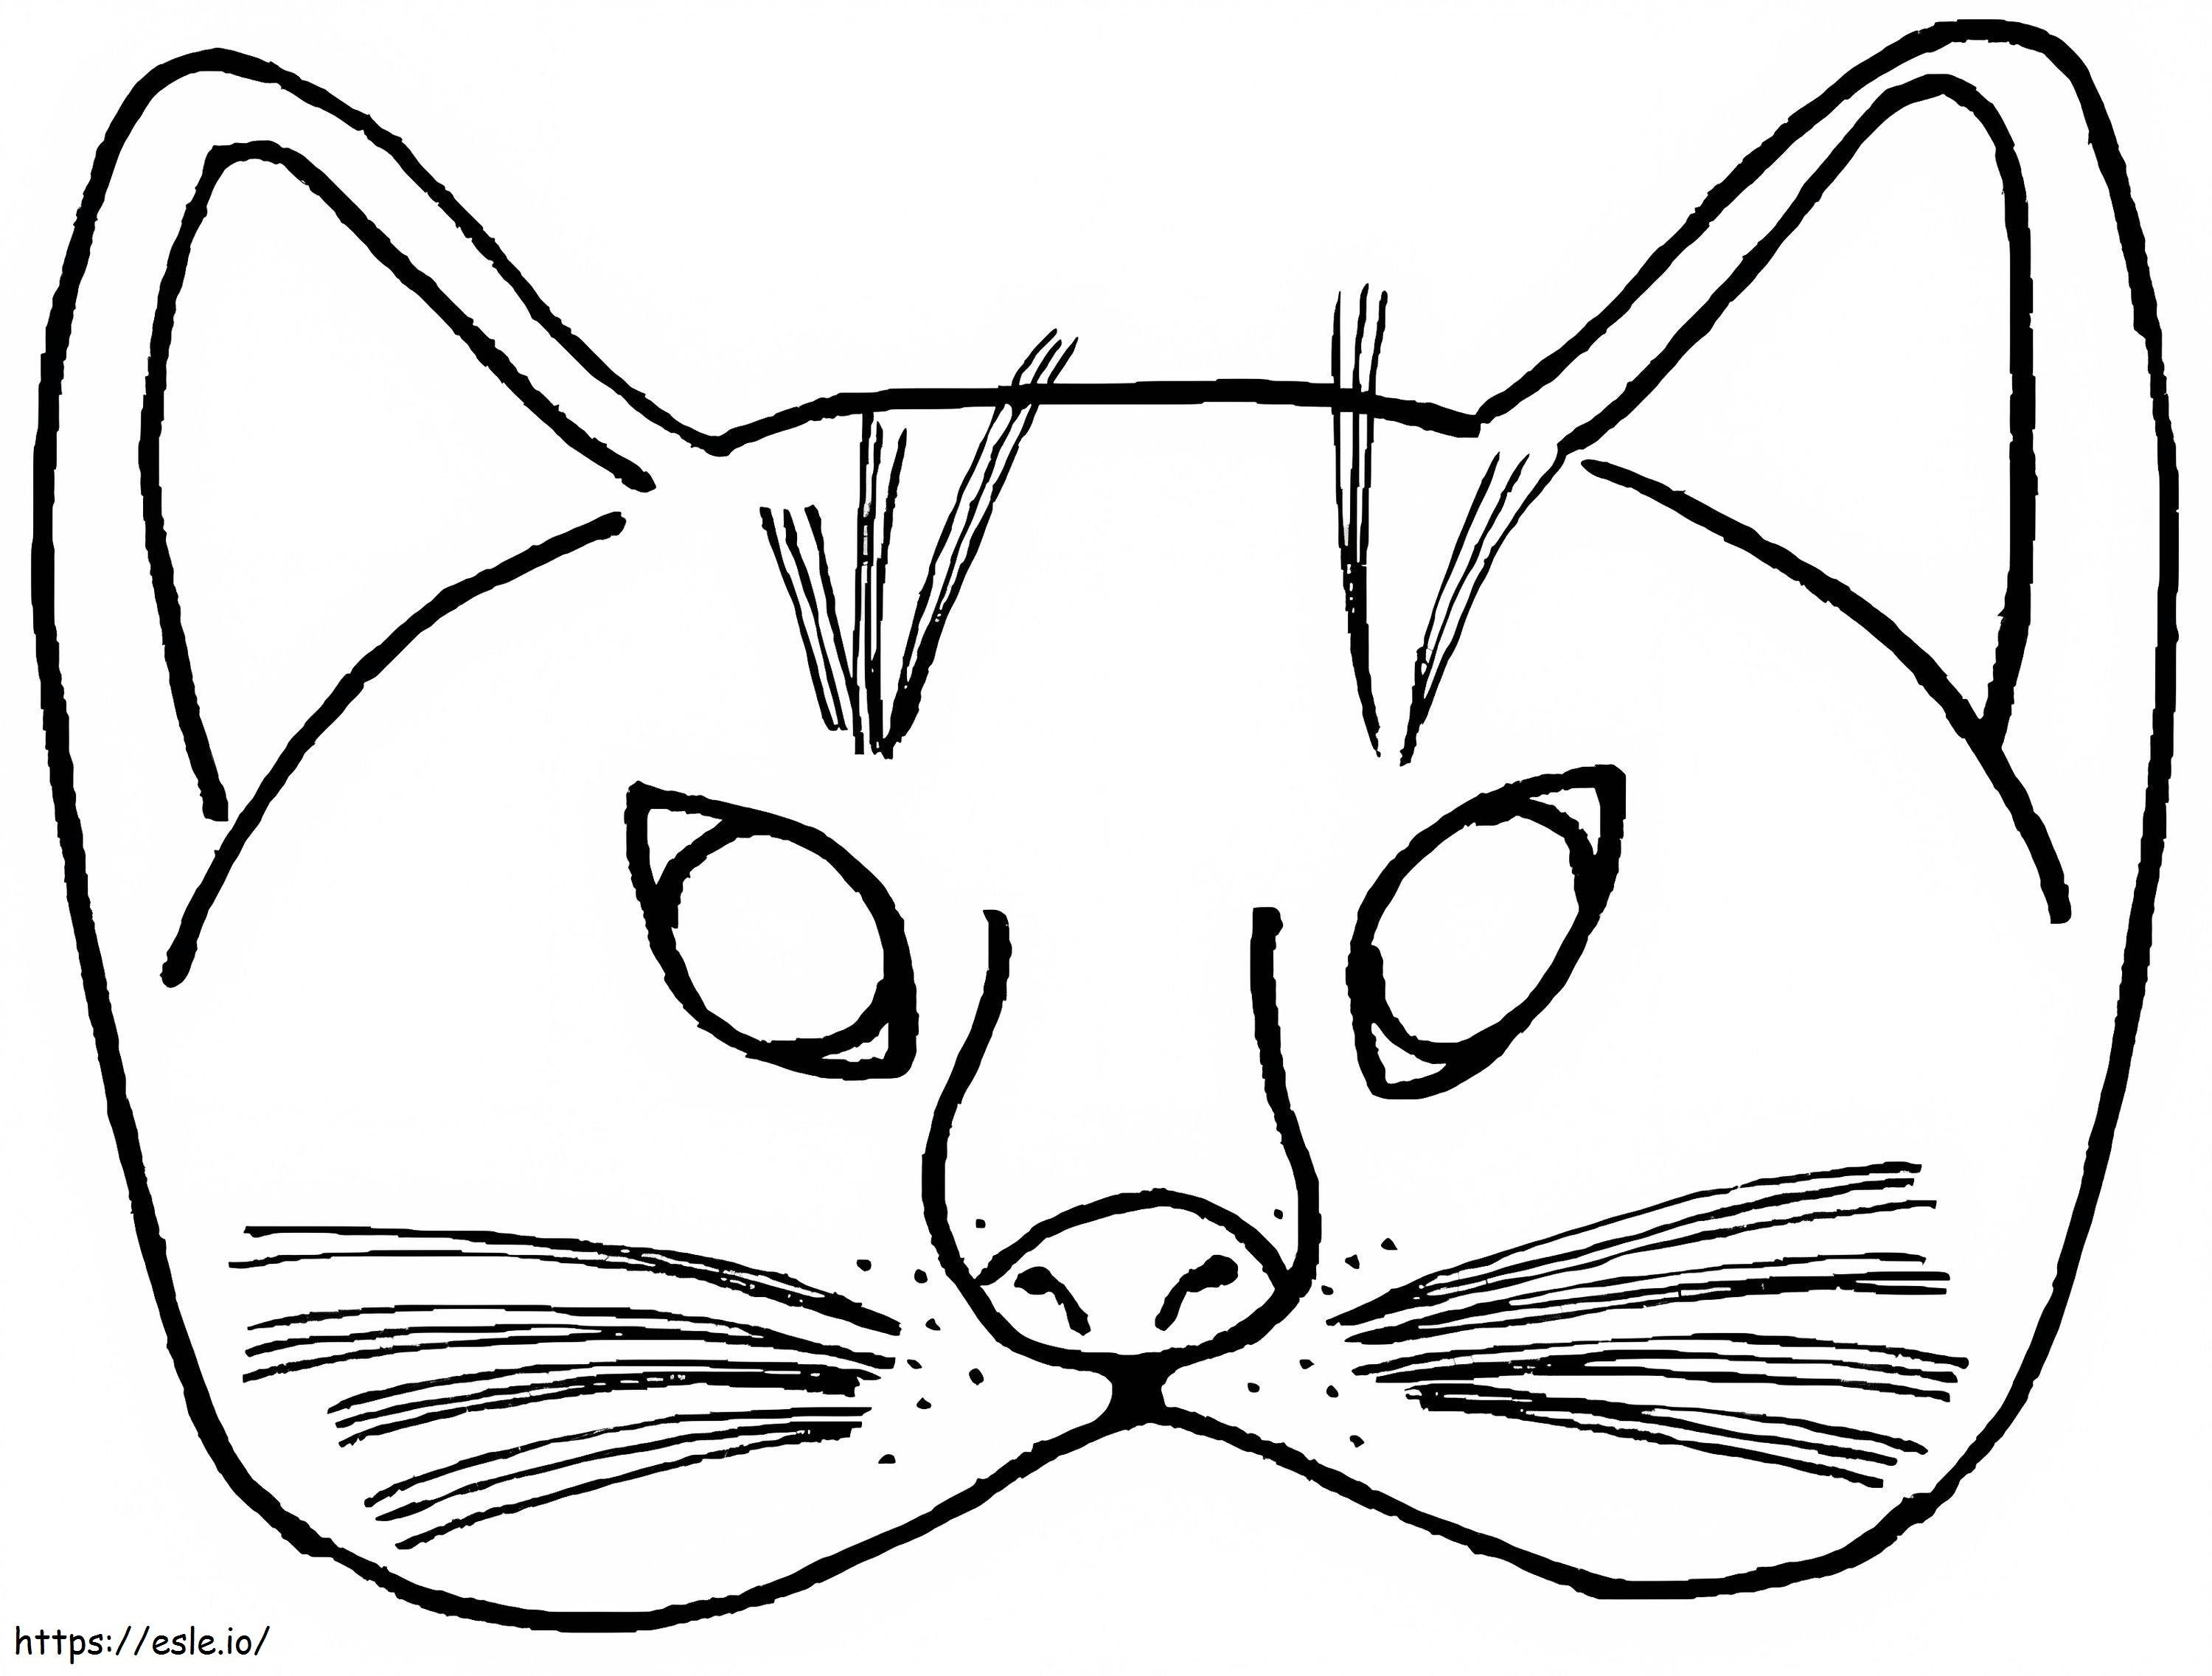 Dibujo De Mascara De Gato para colorear